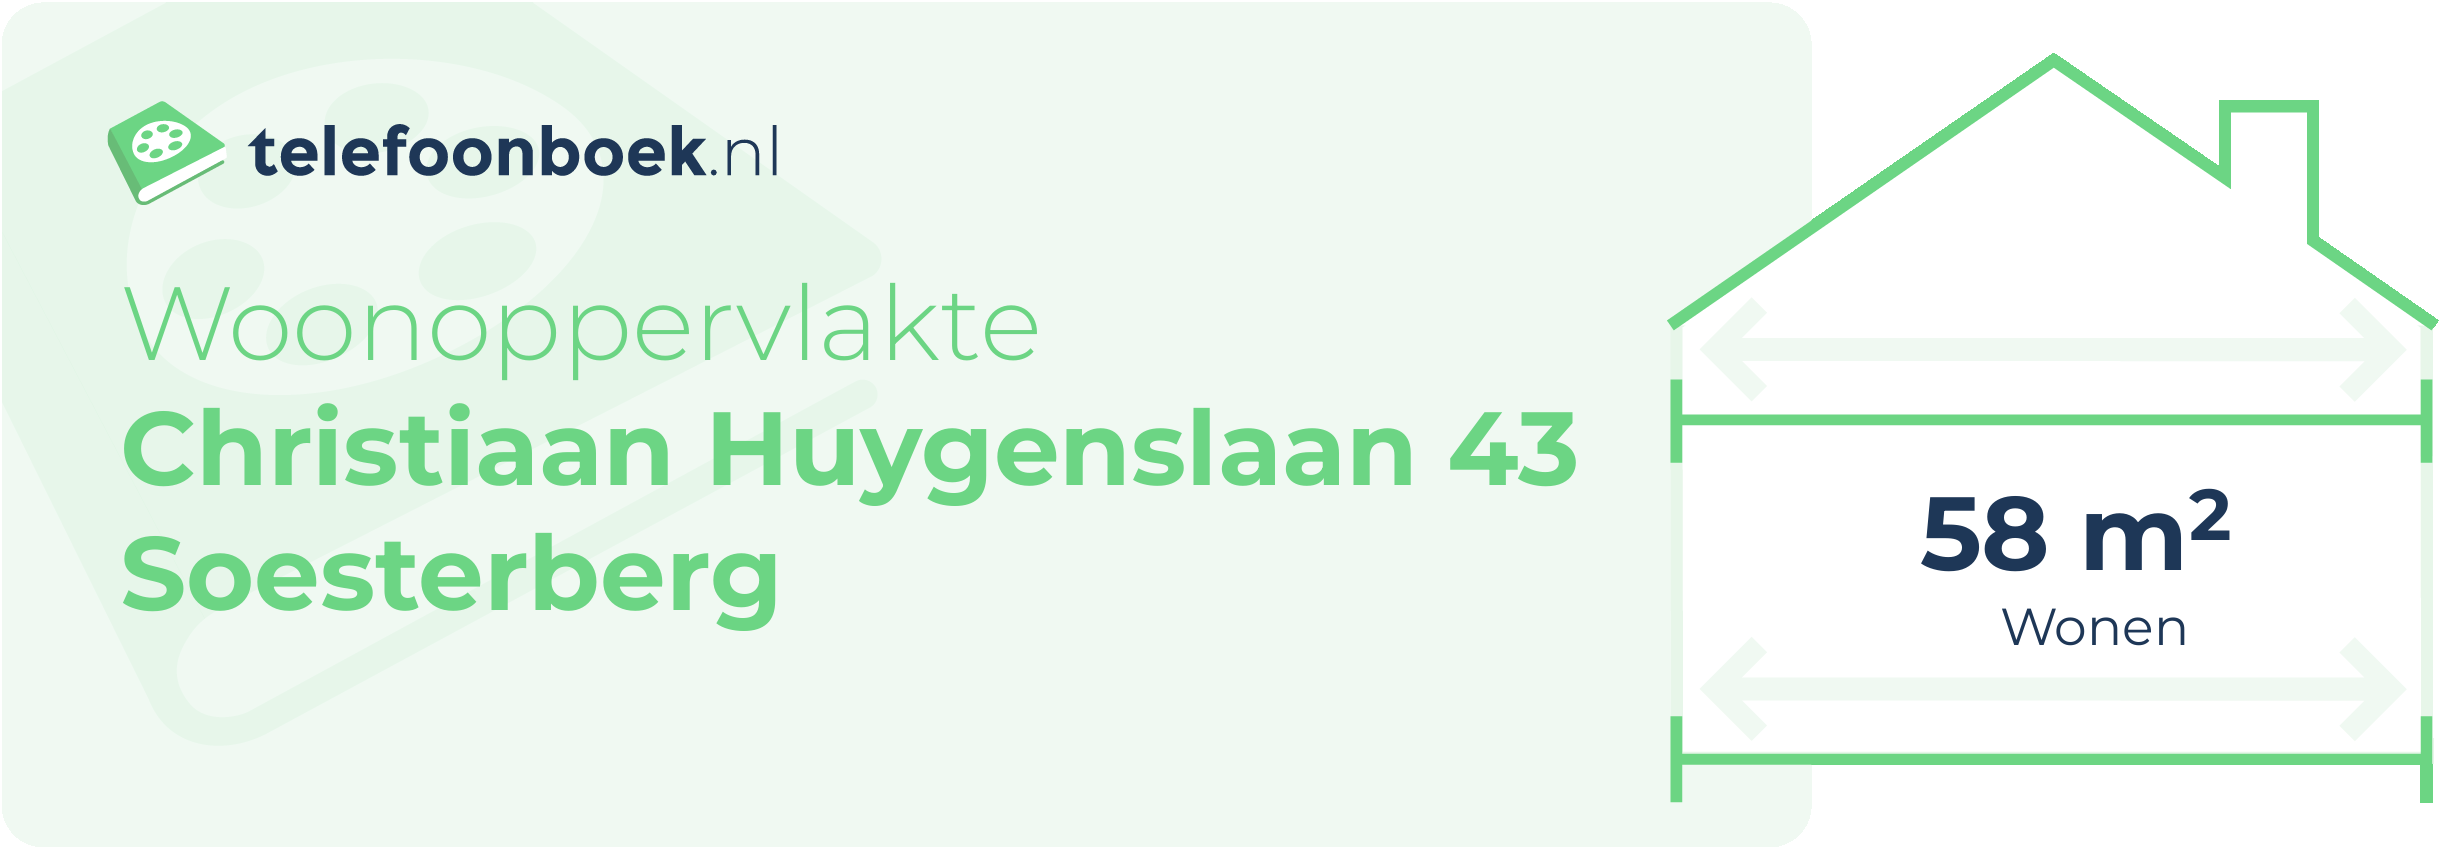 Woonoppervlakte Christiaan Huygenslaan 43 Soesterberg